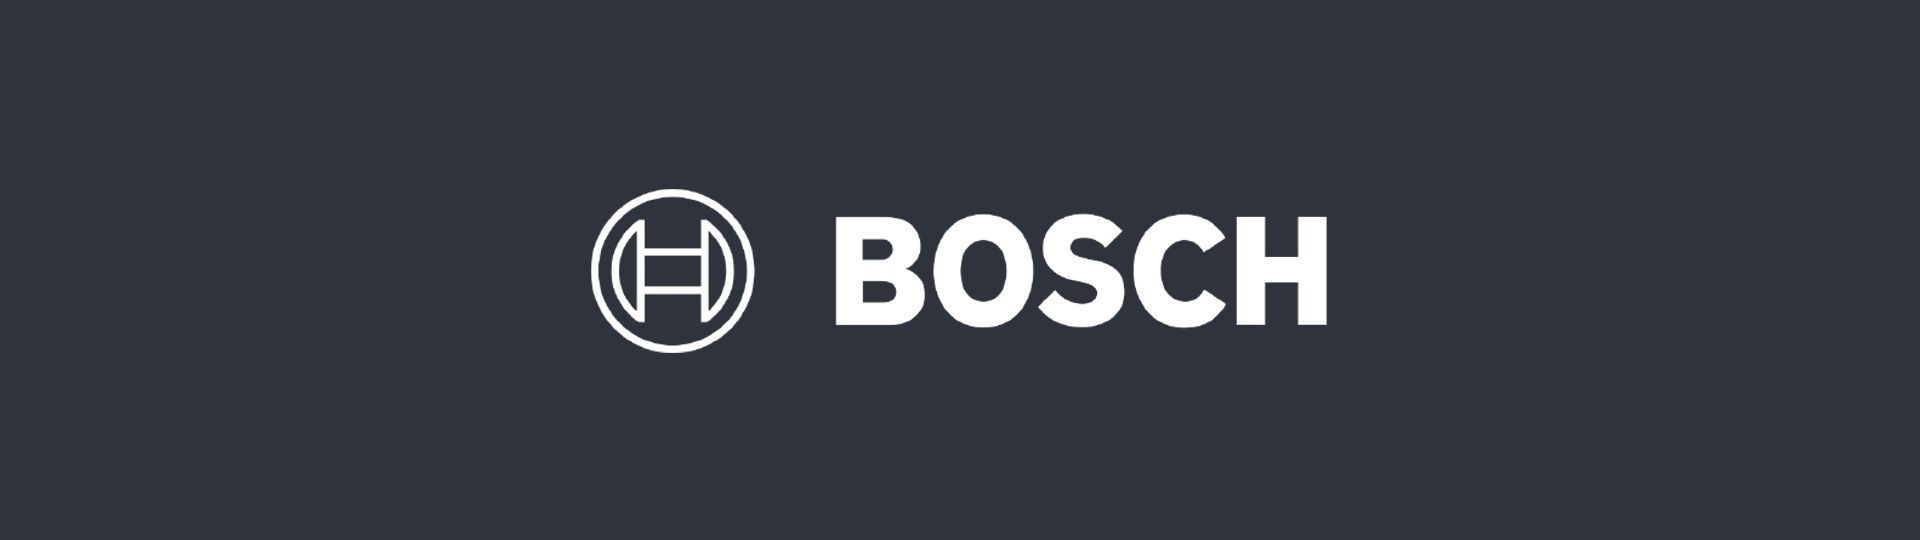 Bosch is a Partium Partner